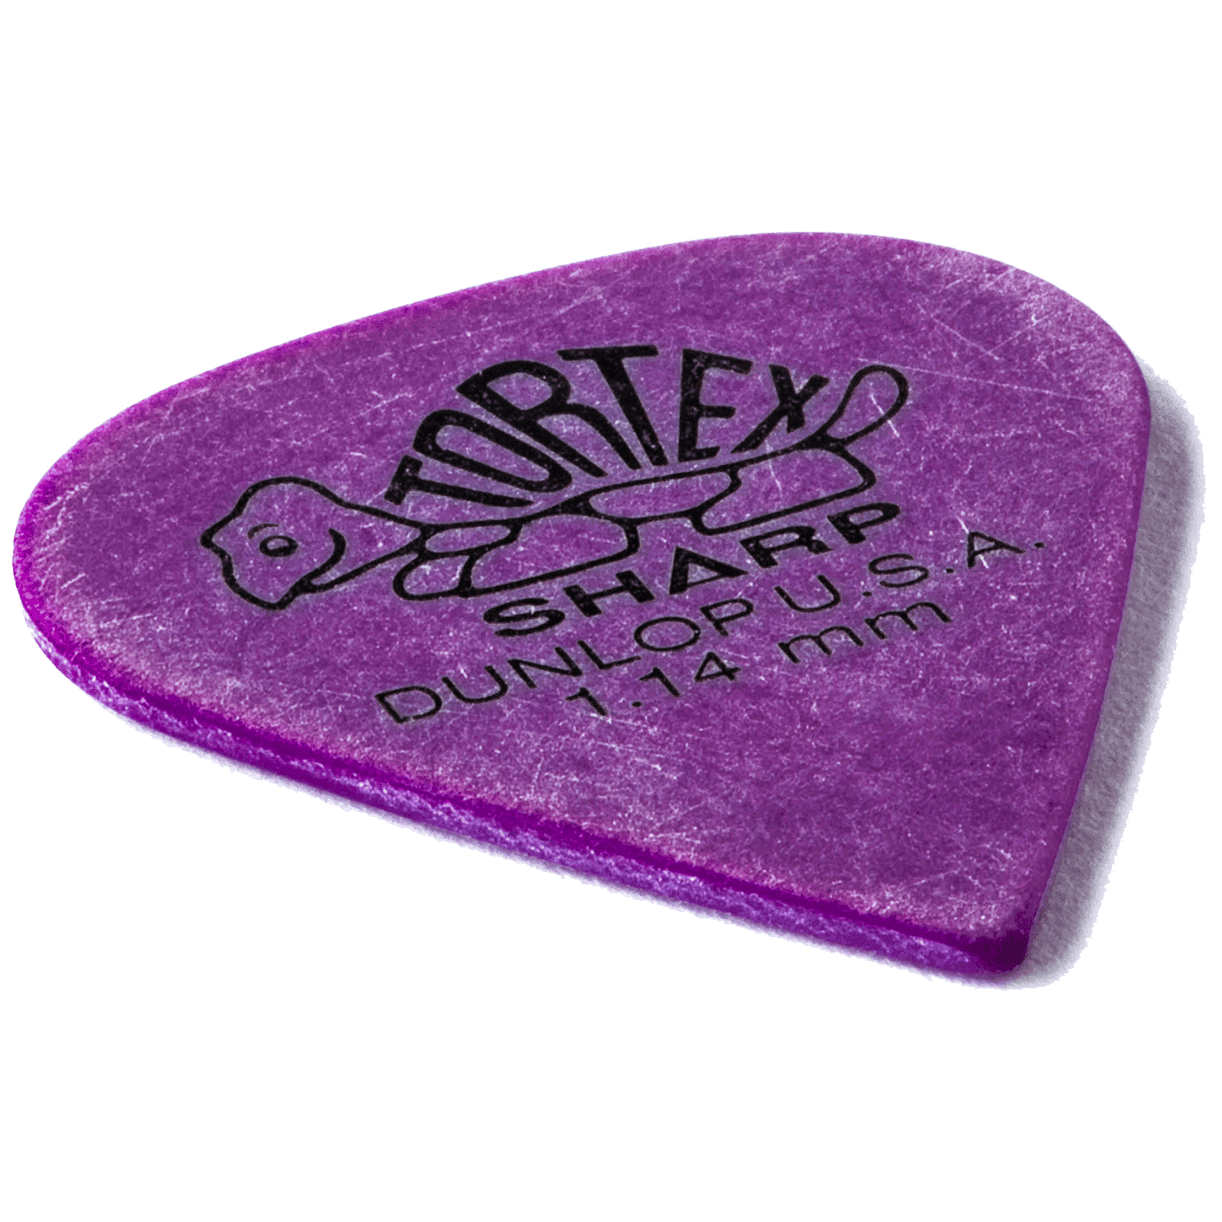 Dunlop Tortex Sharp 1.14 Player's Pack 12 Stück 3